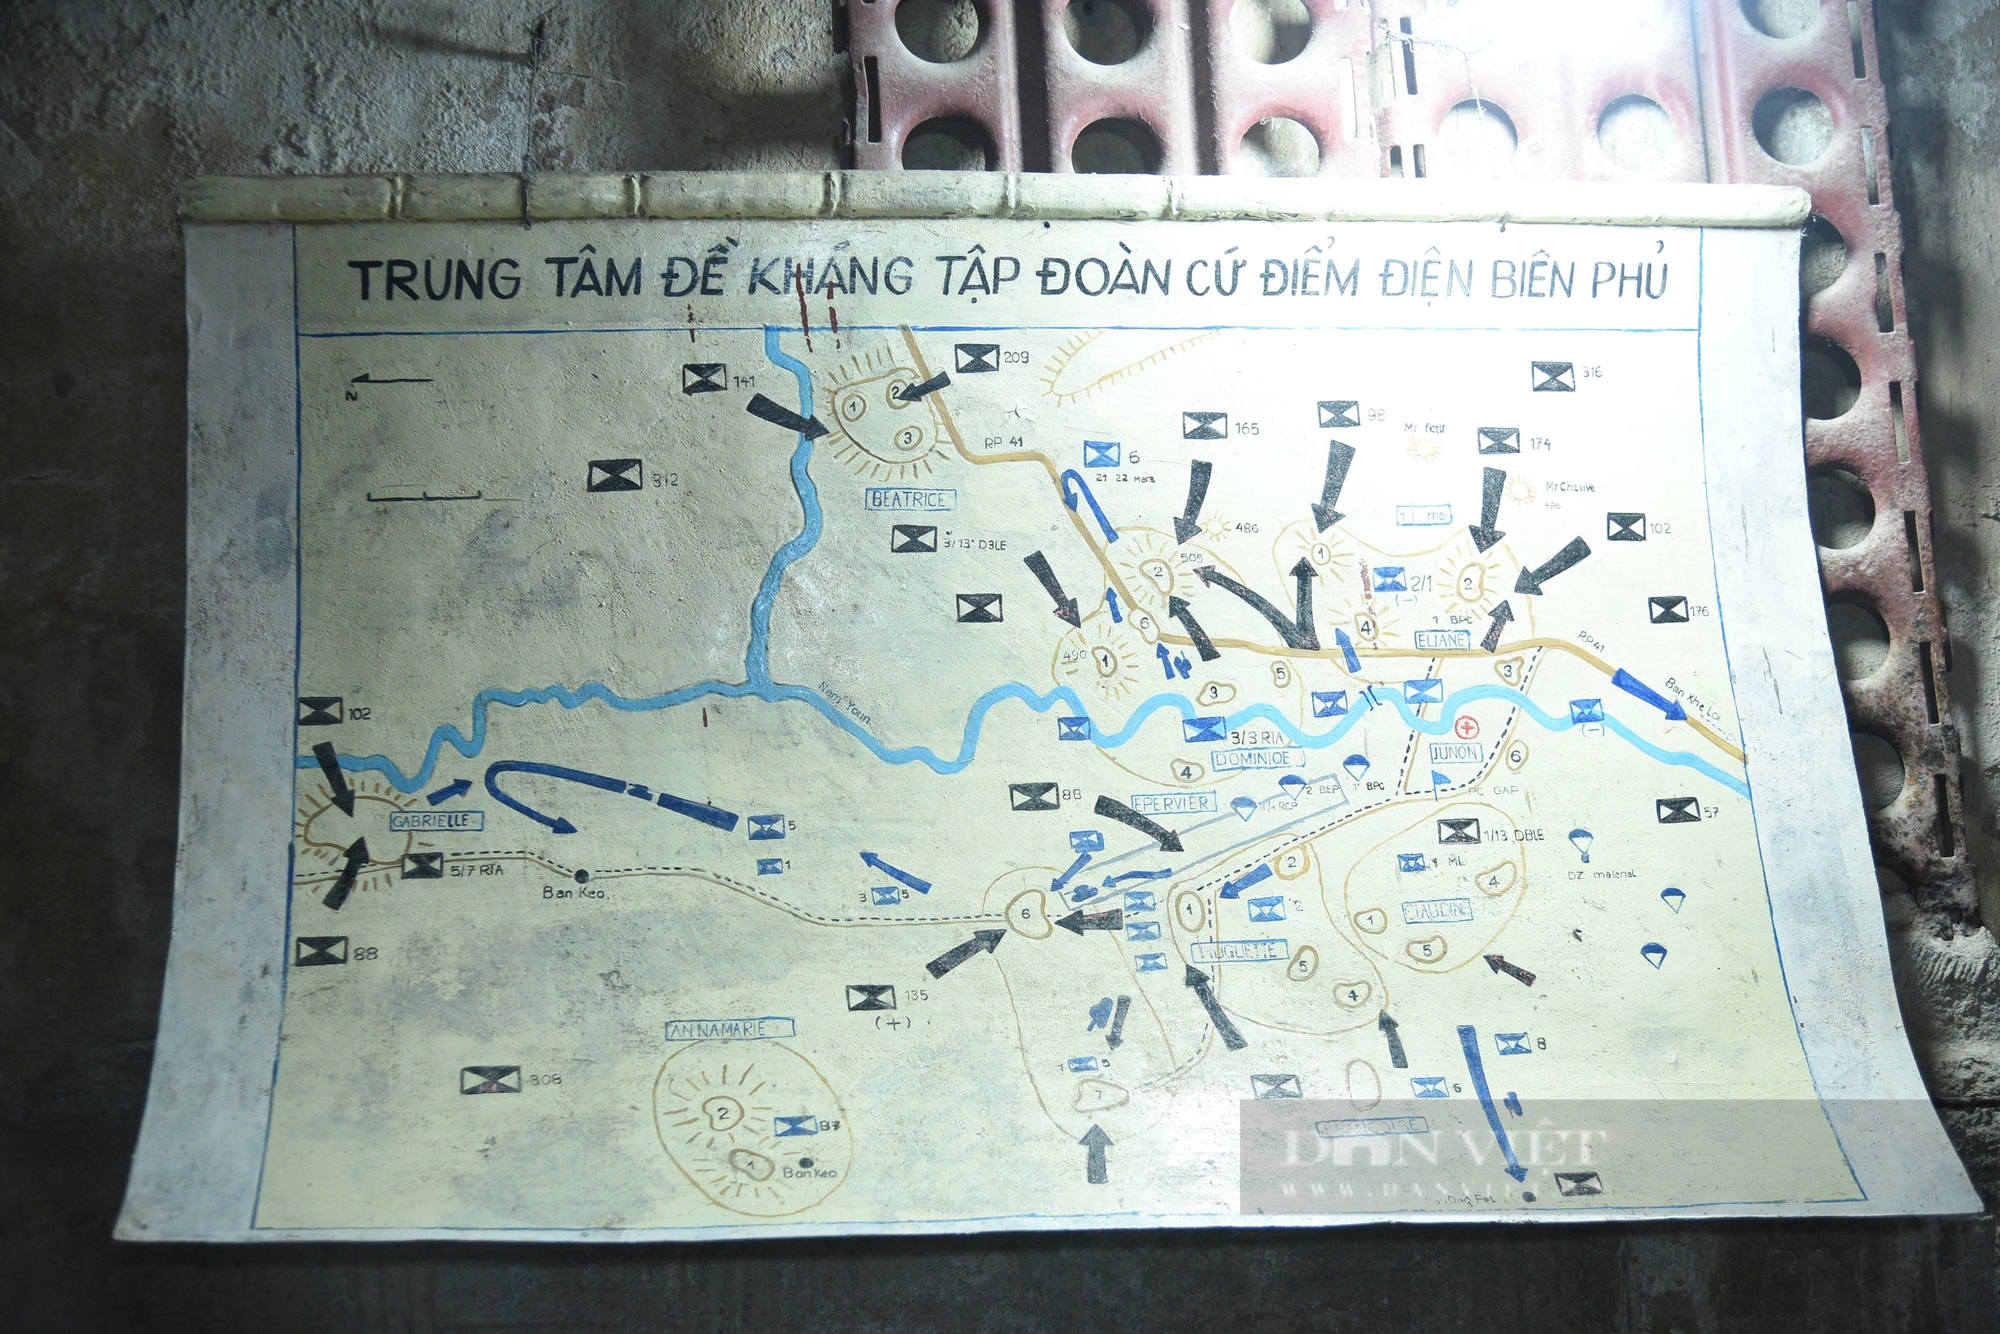 Cận cảnh căn hầm ở Điện Biên Phủ, nơi bắt sống tướng Đờ Cát cách đây 70 năm- Ảnh 8.